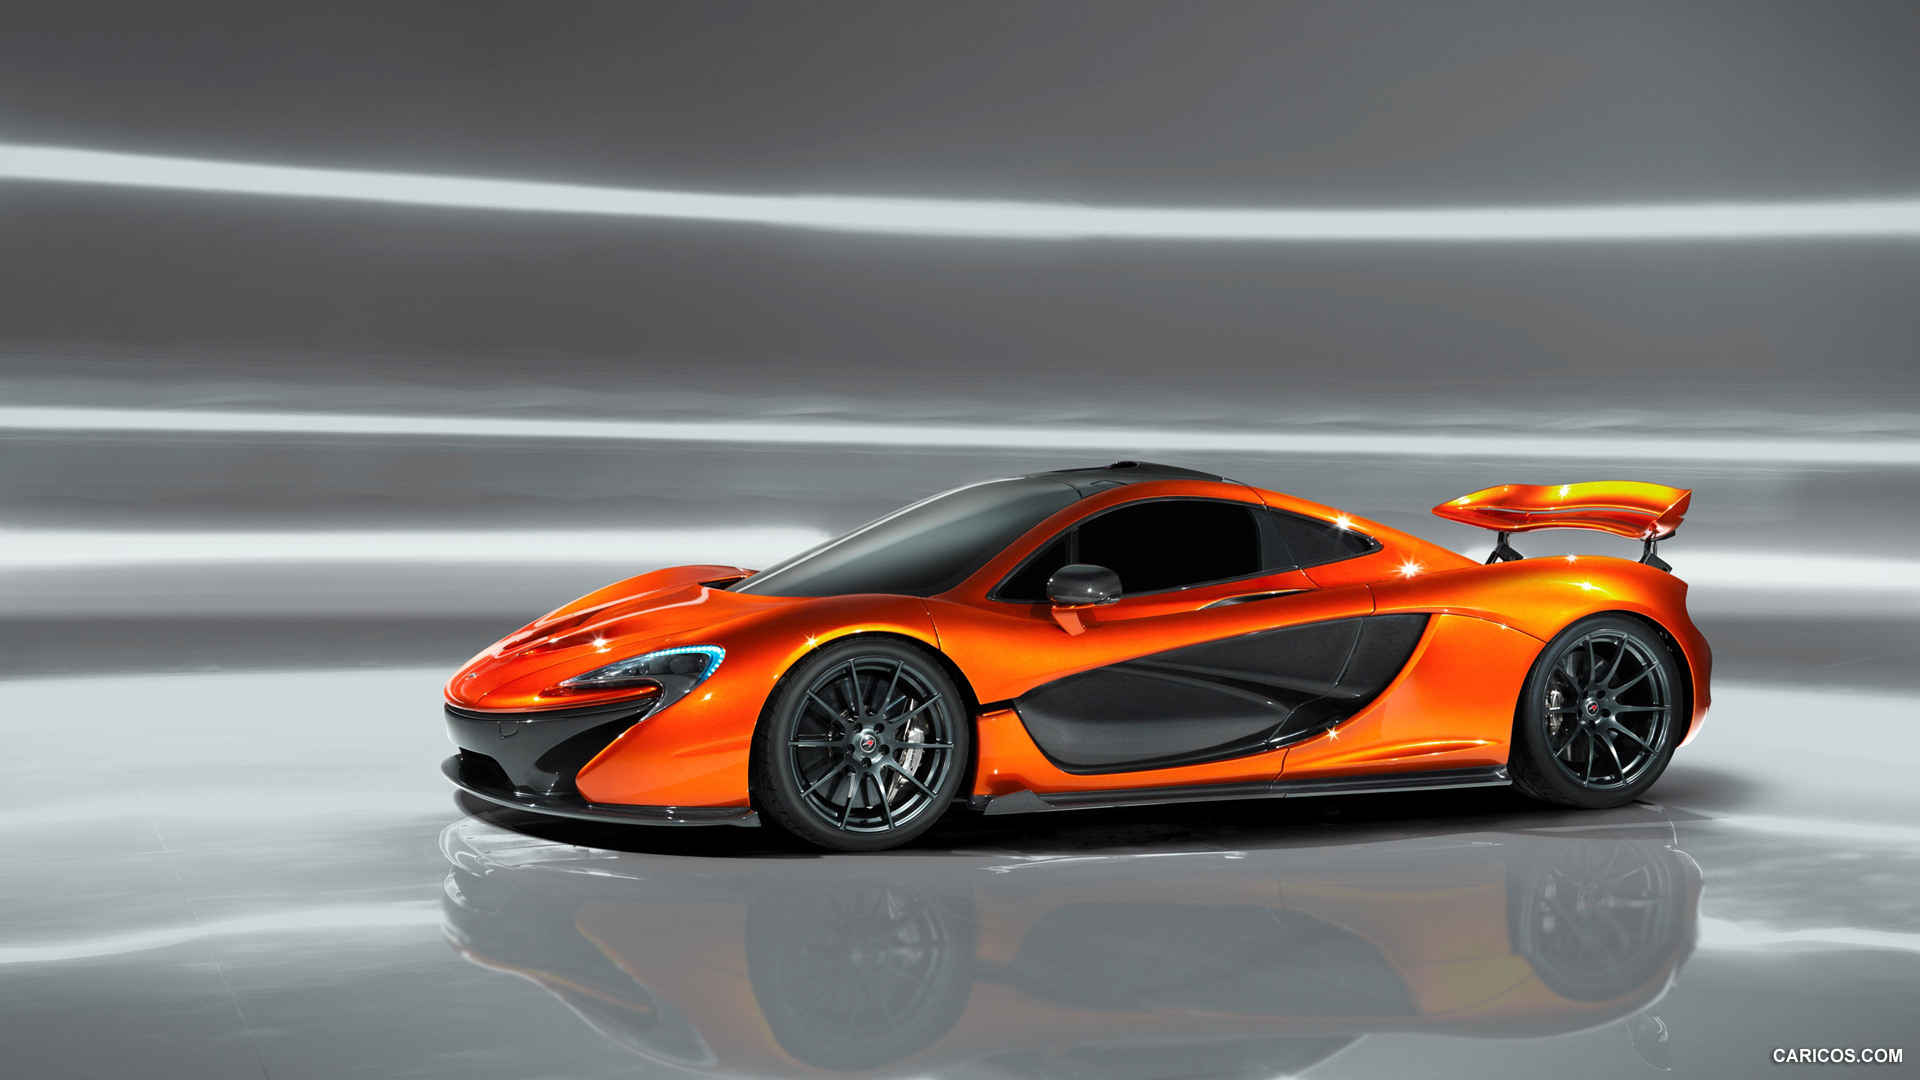 2012 McLaren P1 Concept  - Side, #6 of 15